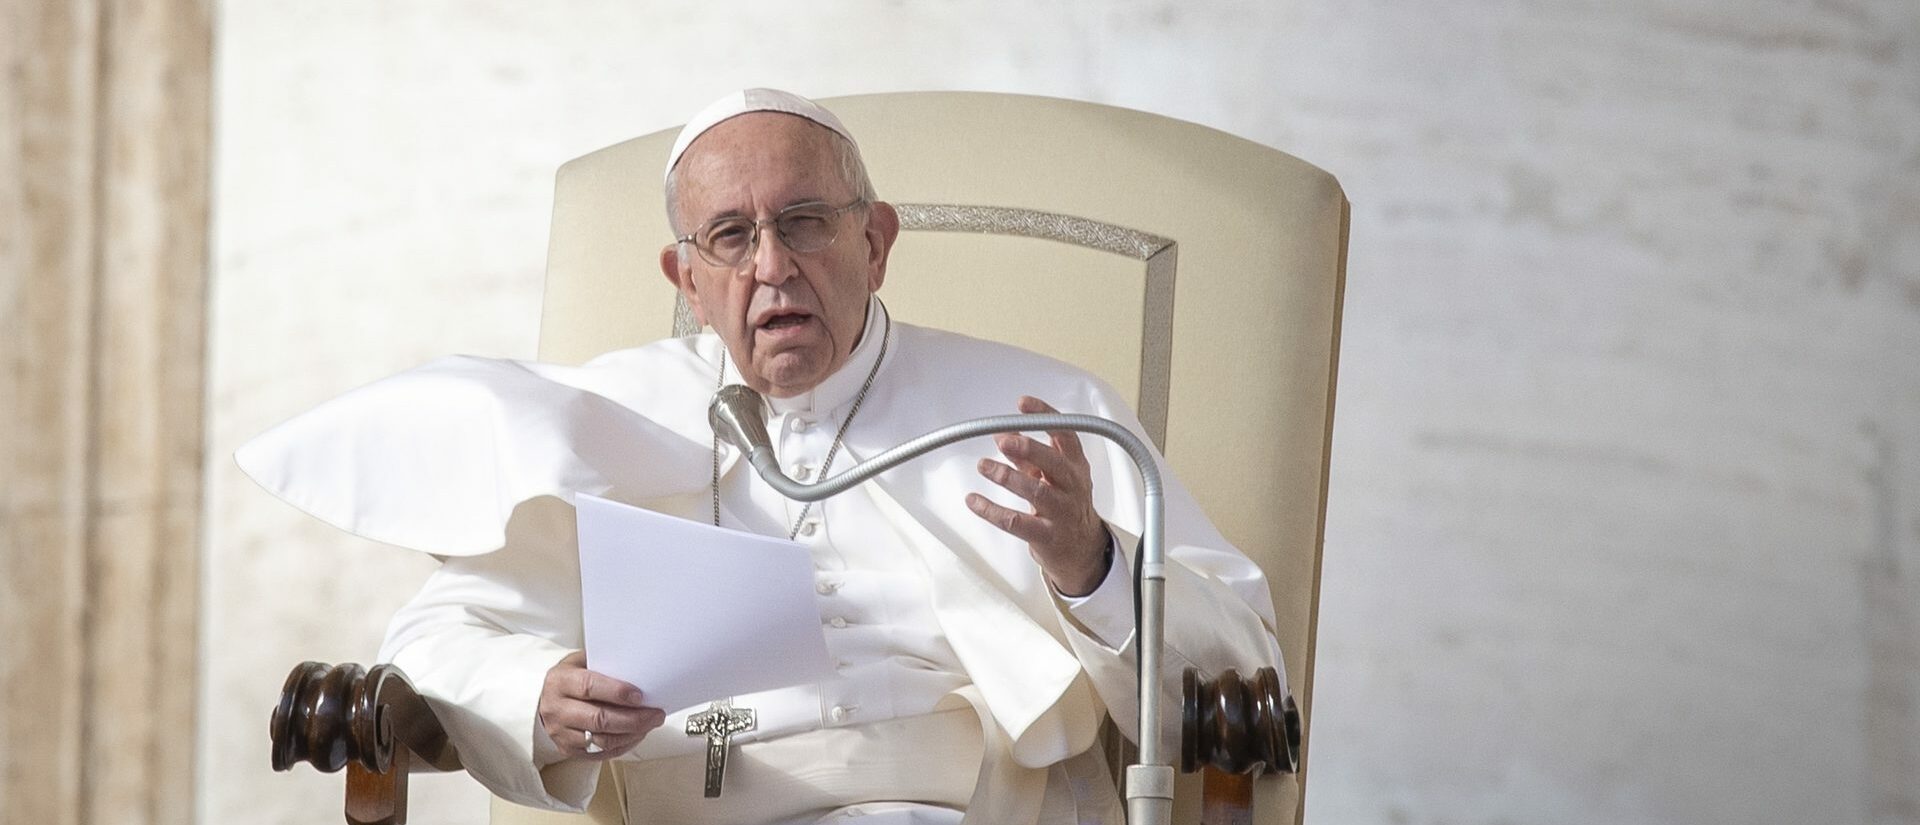 La position assise est en ce moment la plus recommandée pour le pape François | photo d'illustration © Antoine Mekary I.Media